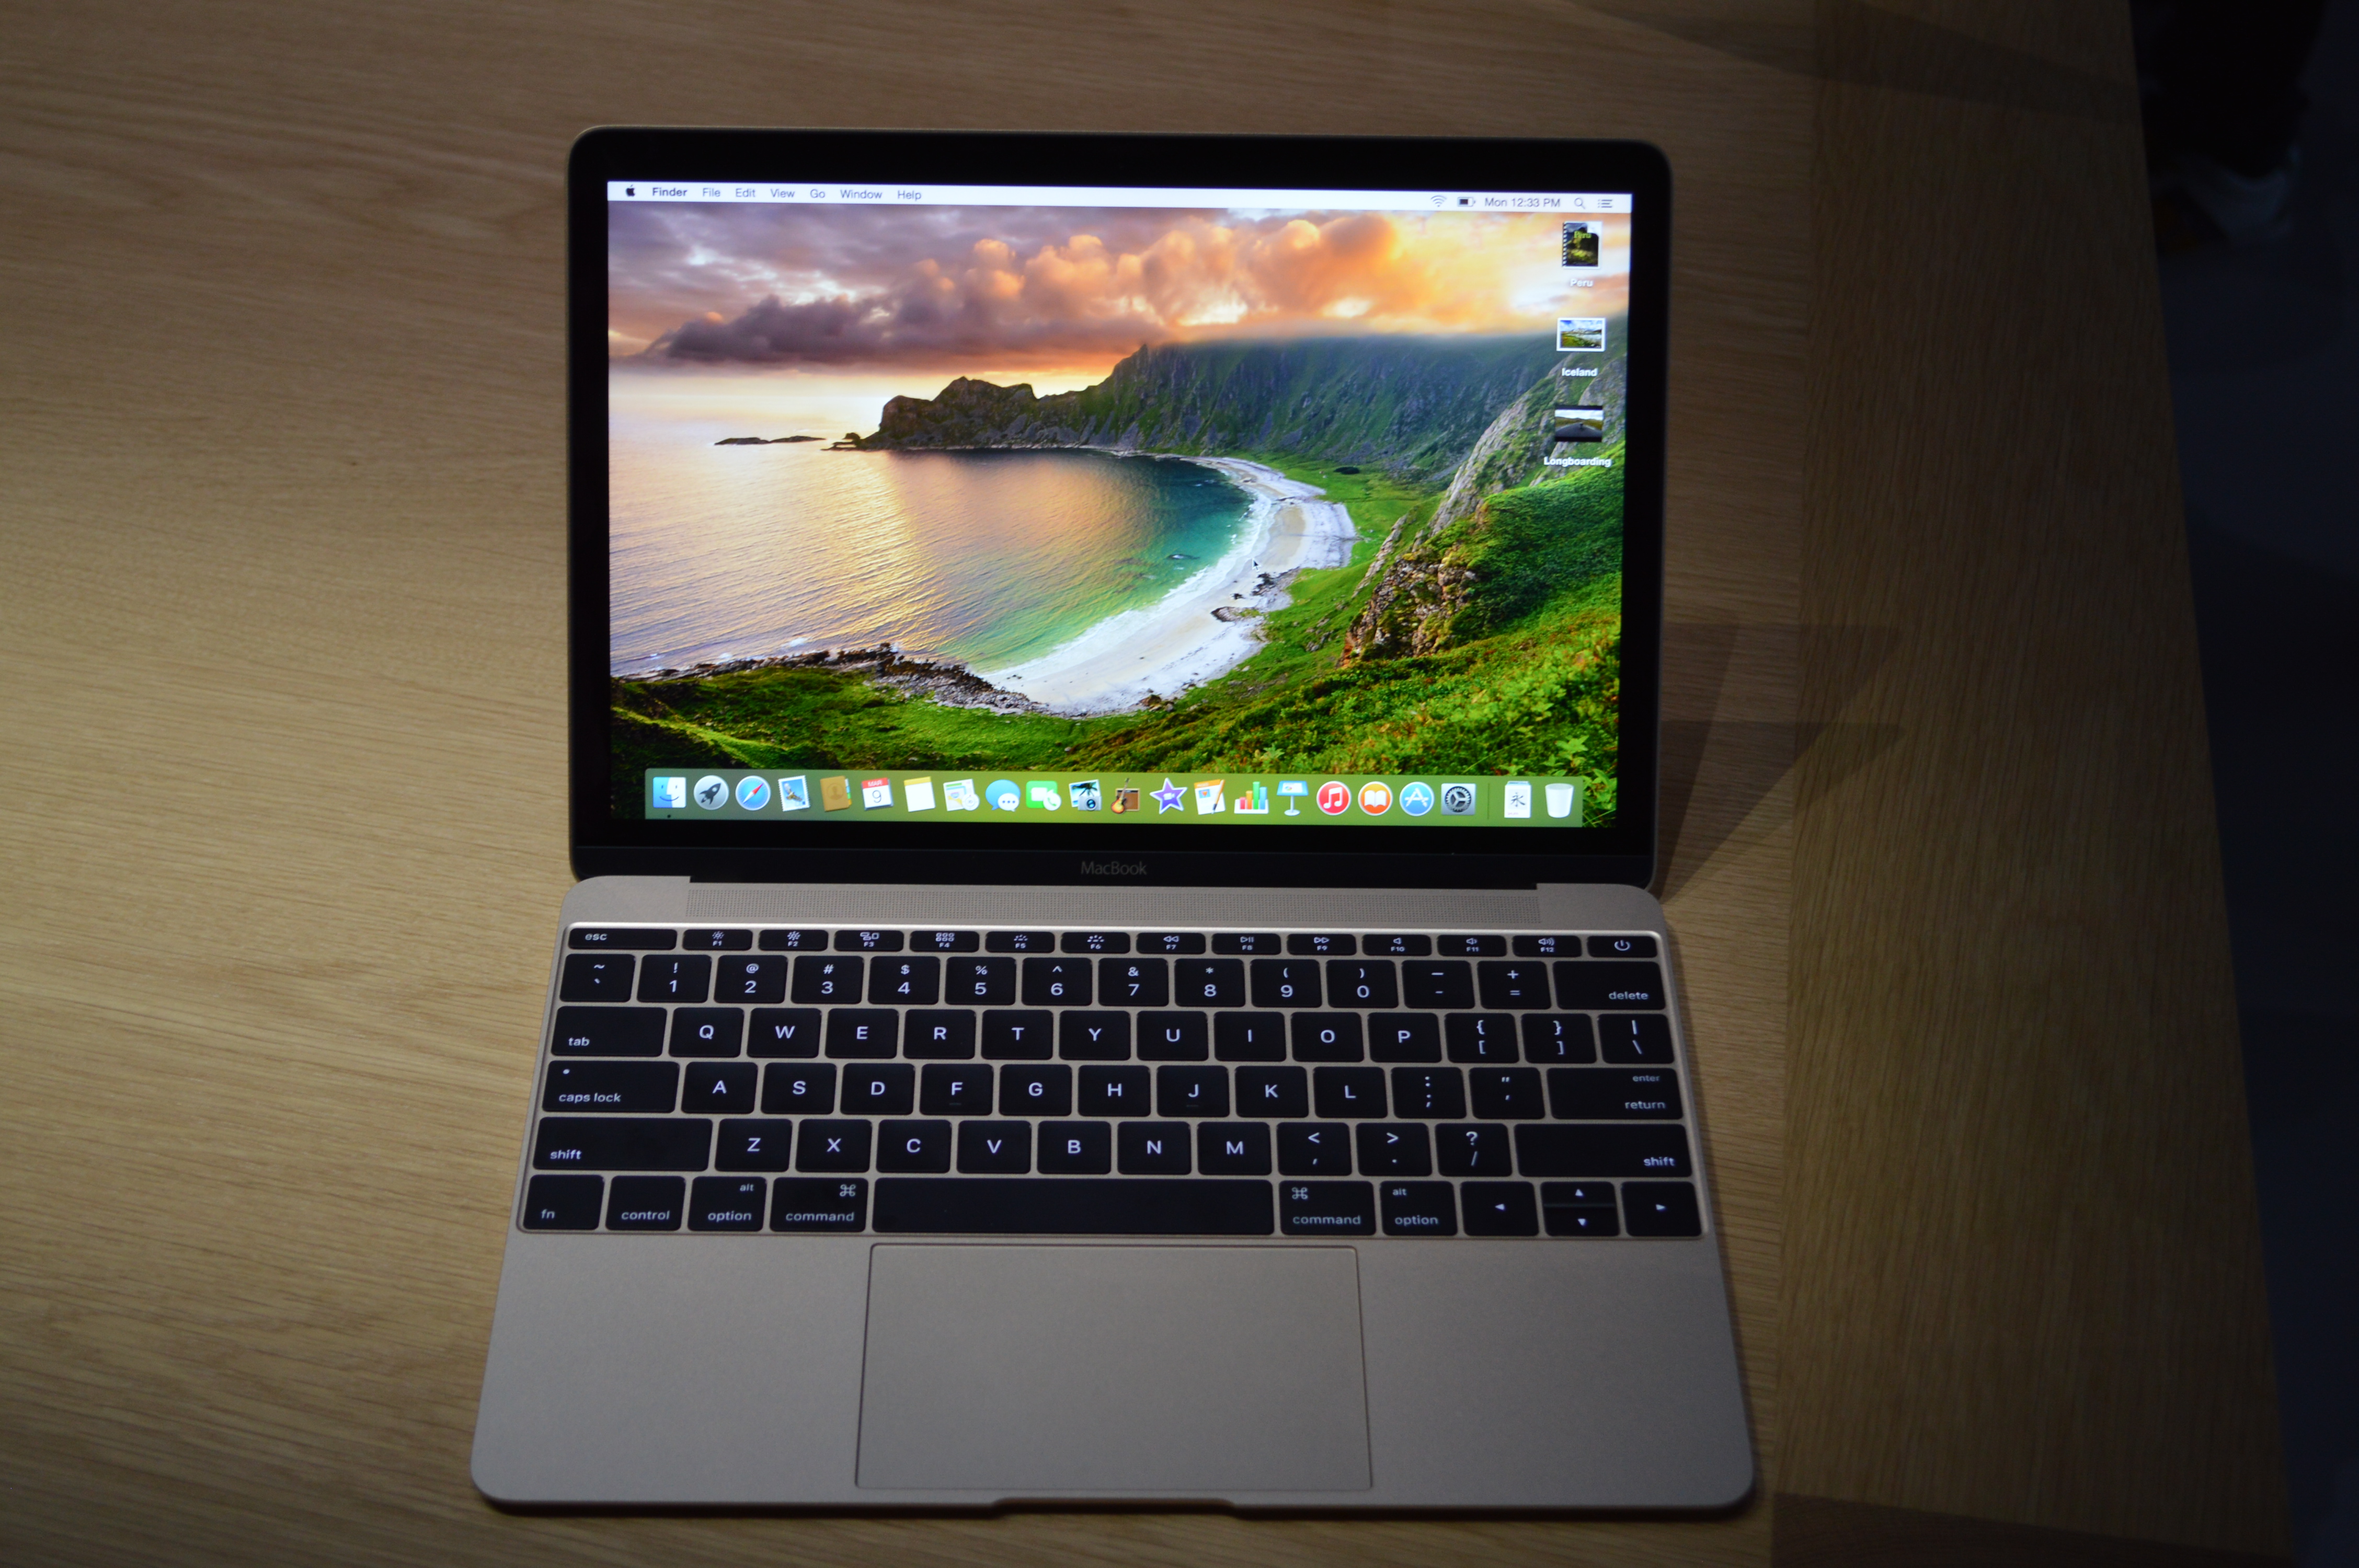 Apple MacBook (2015) Hands-On